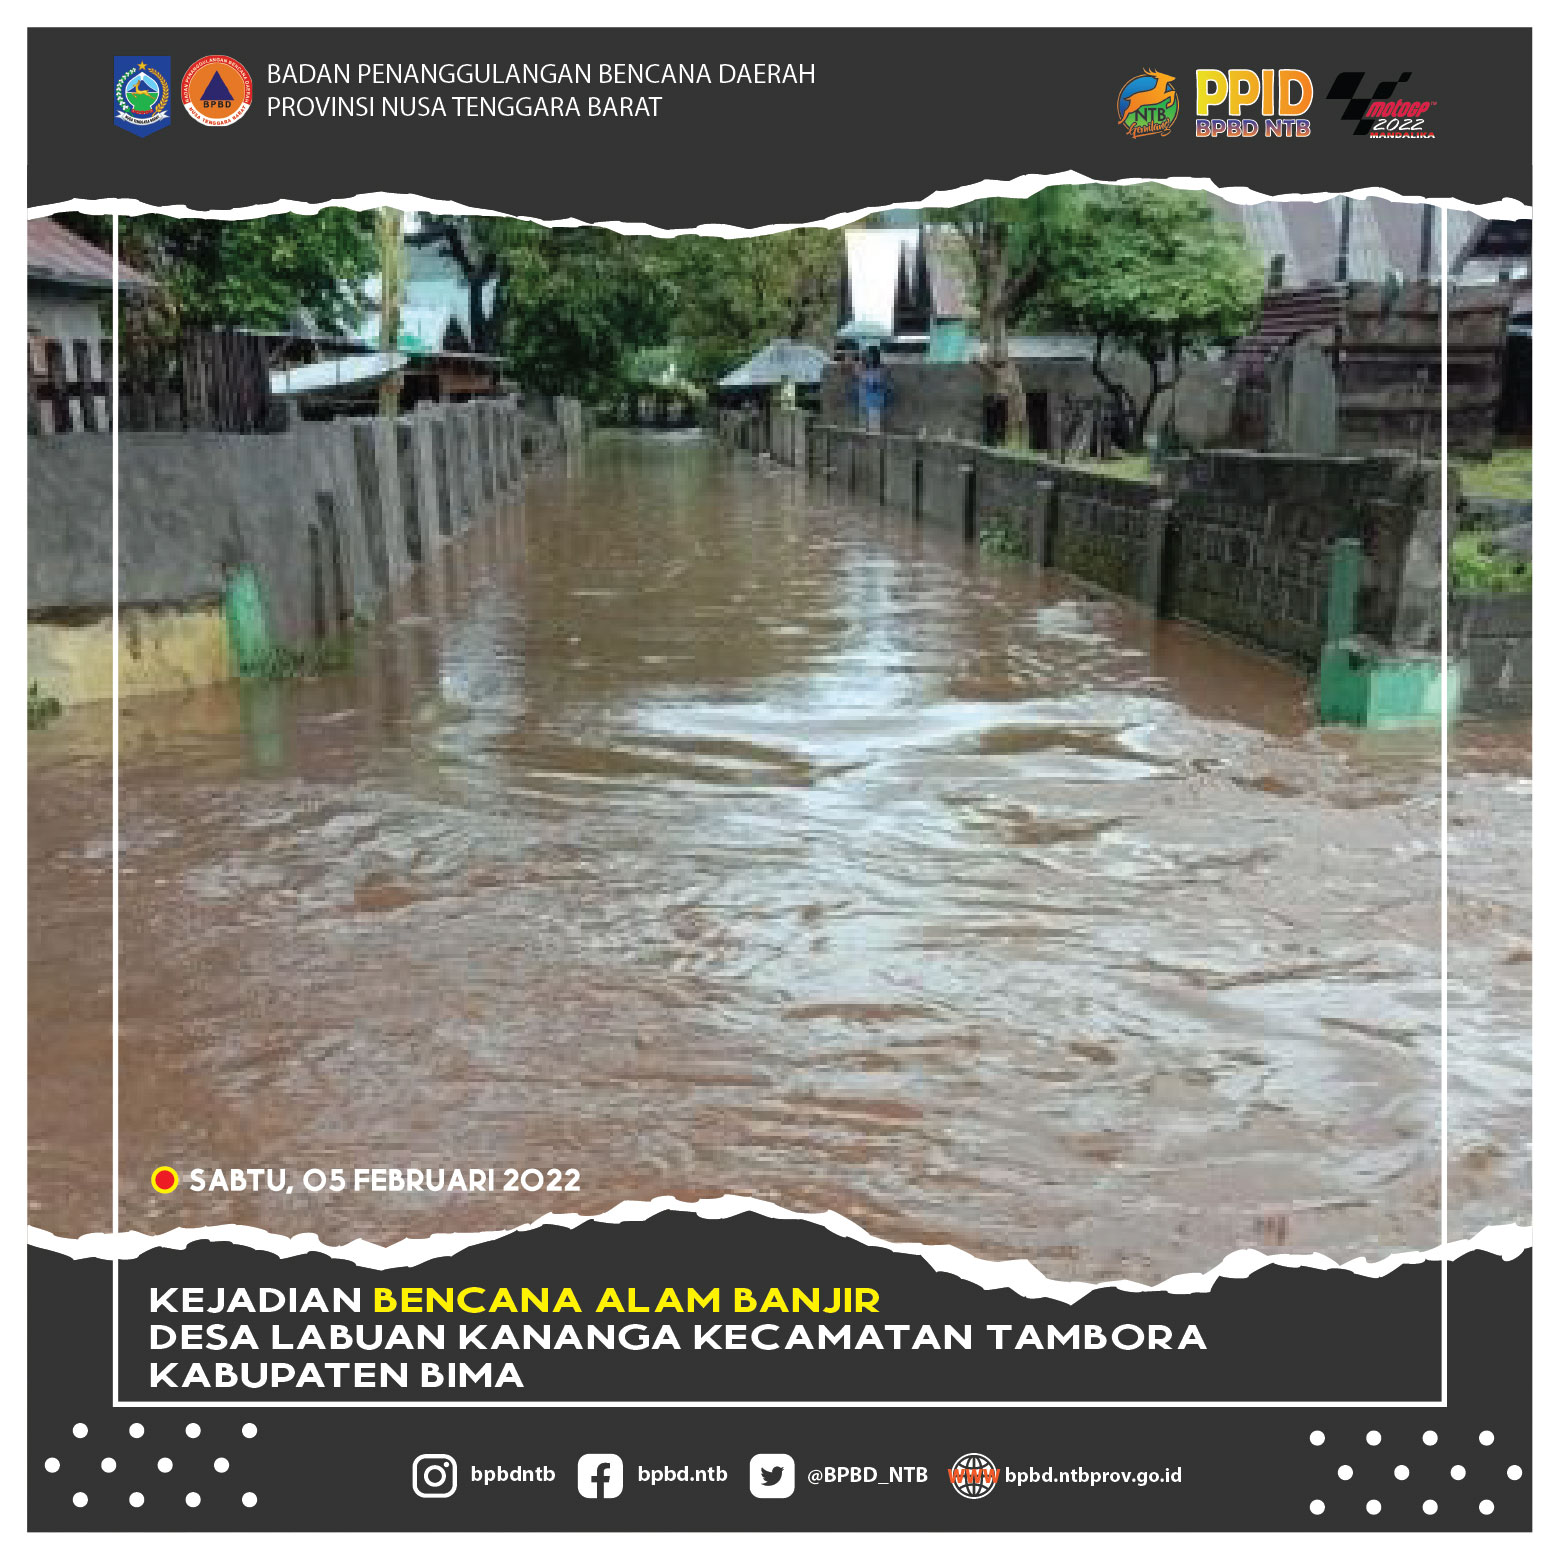 Kejadian Bencana Alam Banjir Desa Labuan Kananga Kecamatan Tambora Kabupaten Bima (Sabtu, 05 Februari 2022)